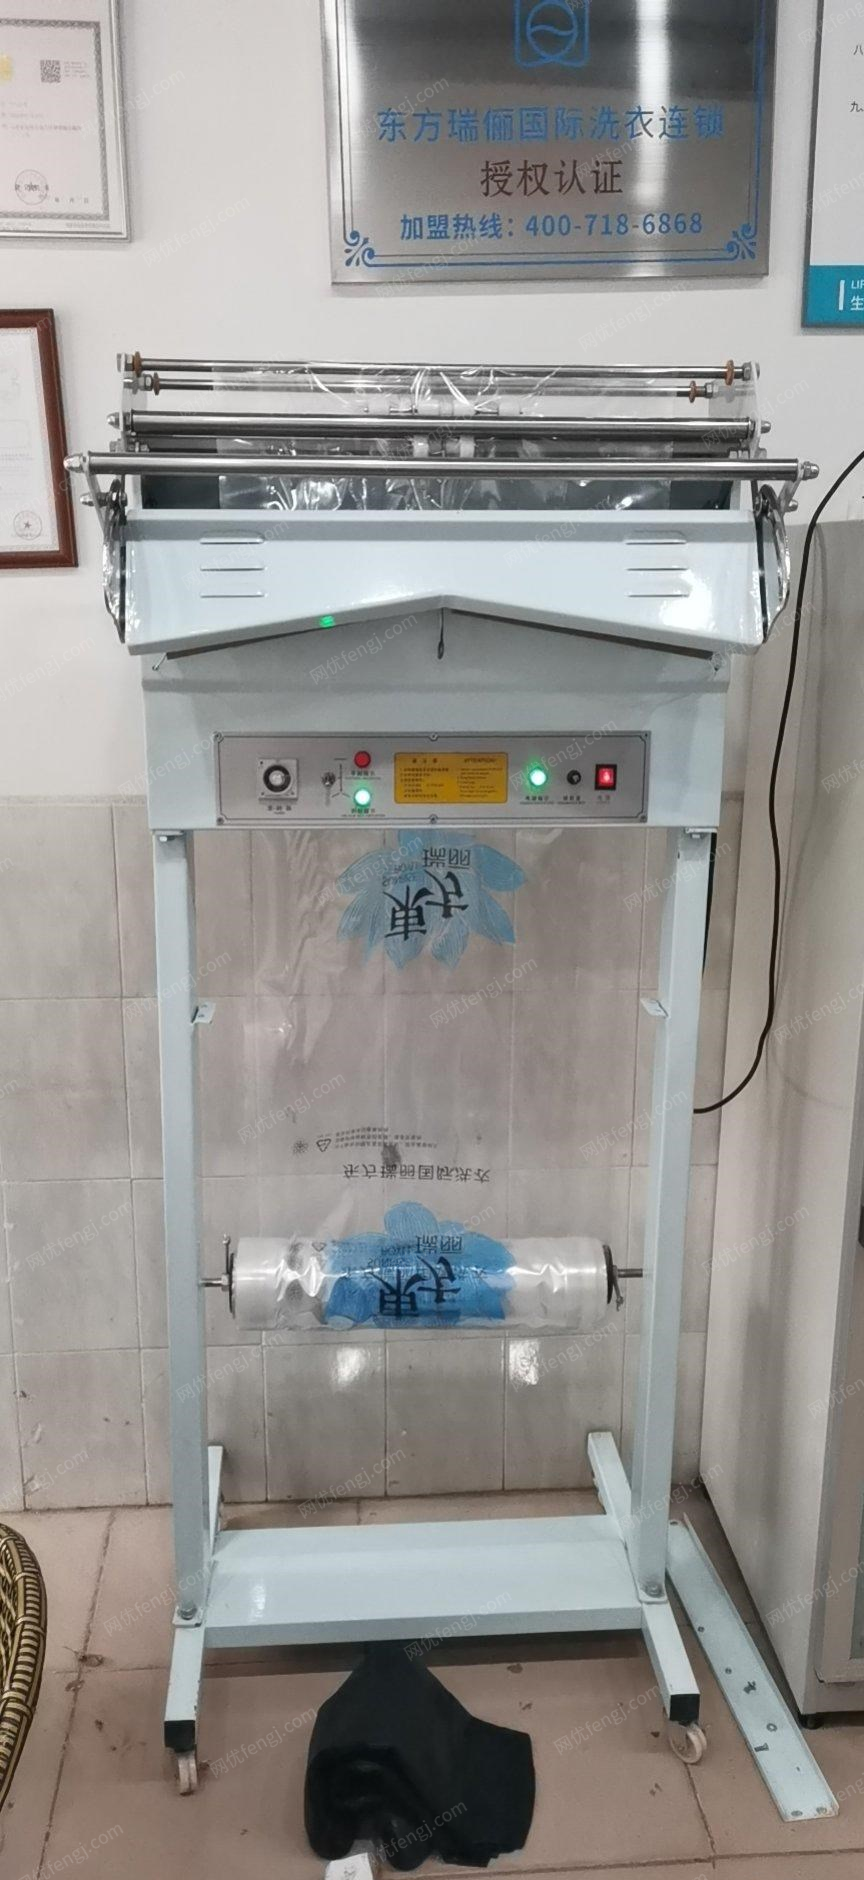 云南昆明干洗店设备全套烘干机，烫台等转让，3年多一点的机子